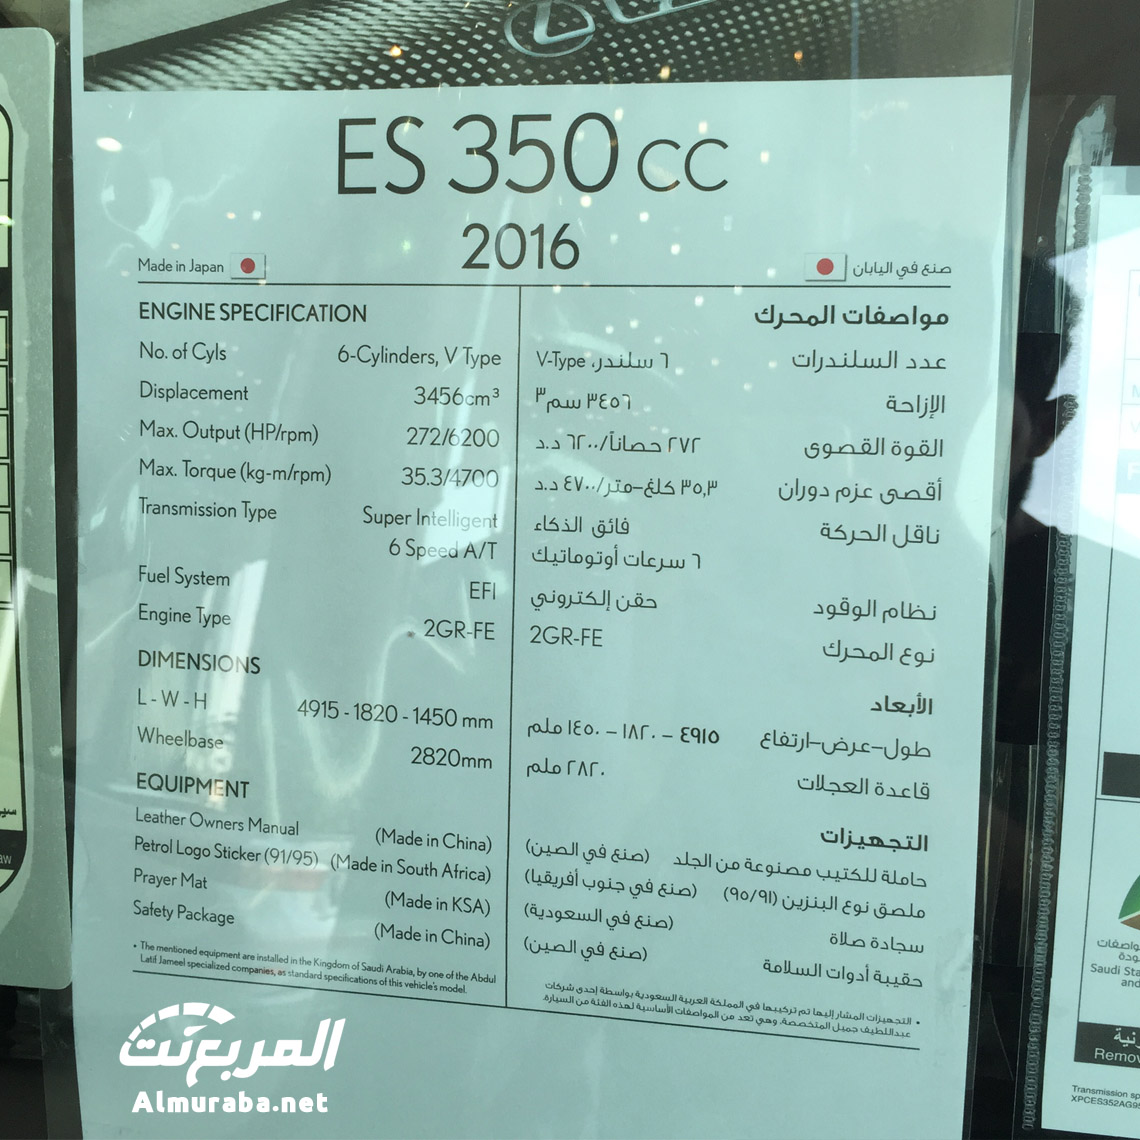 لكزس اي اس 2016 بالشكل الجديد تصل الى السعودية تقرير ومواصفات واسعار وصور Lexus Es 350 المربع نت